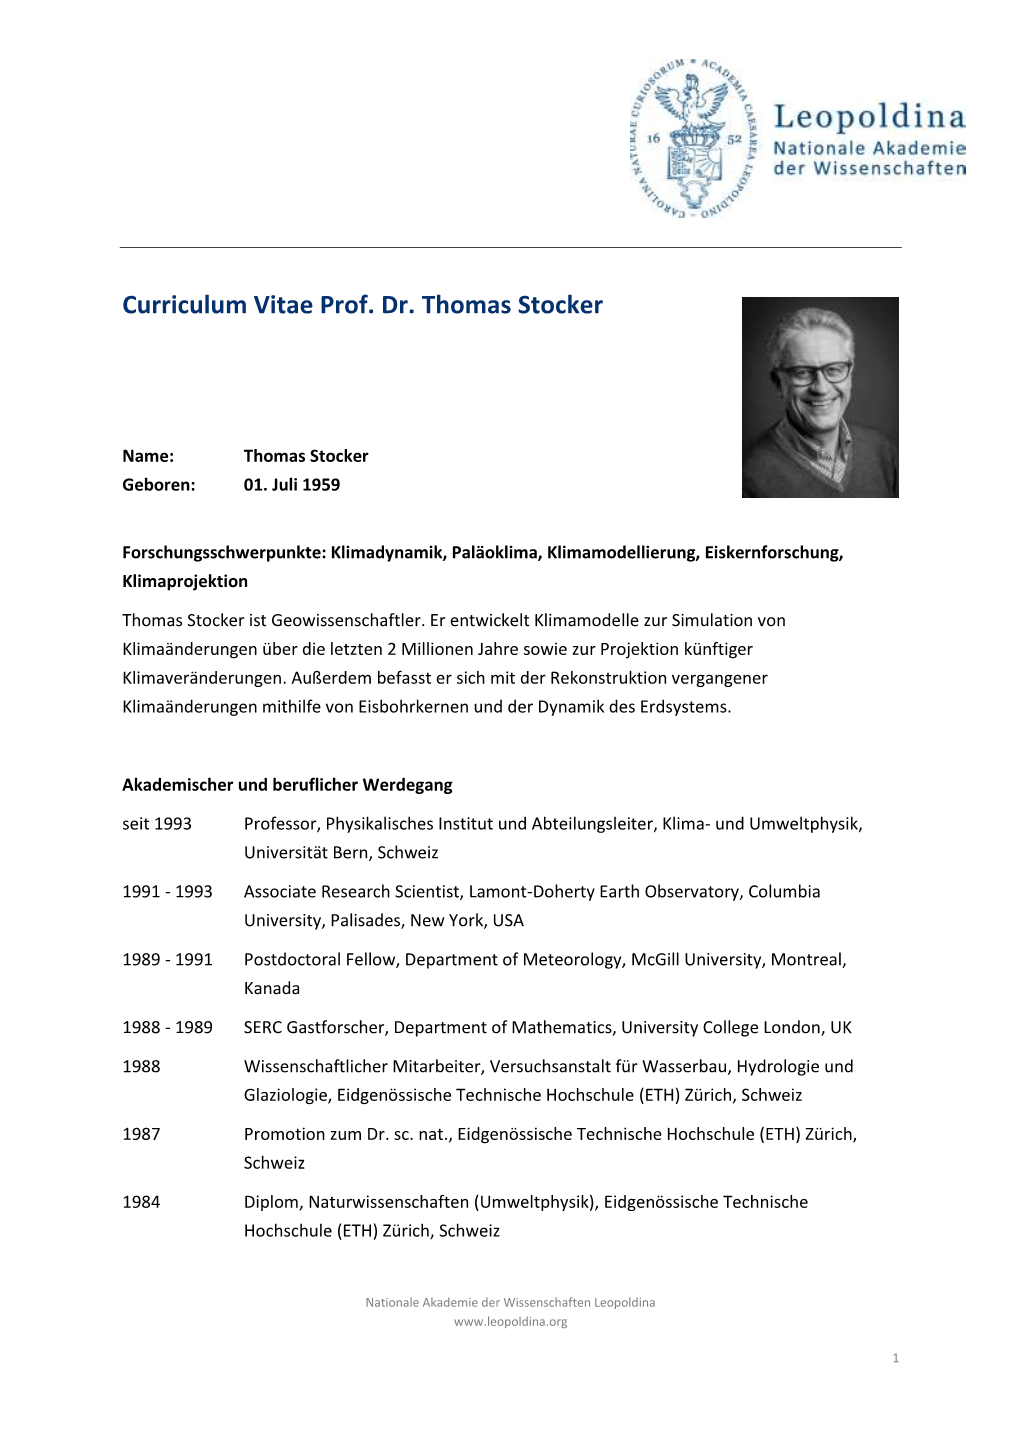 Curriculum Vitae Prof. Dr. Thomas Stocker